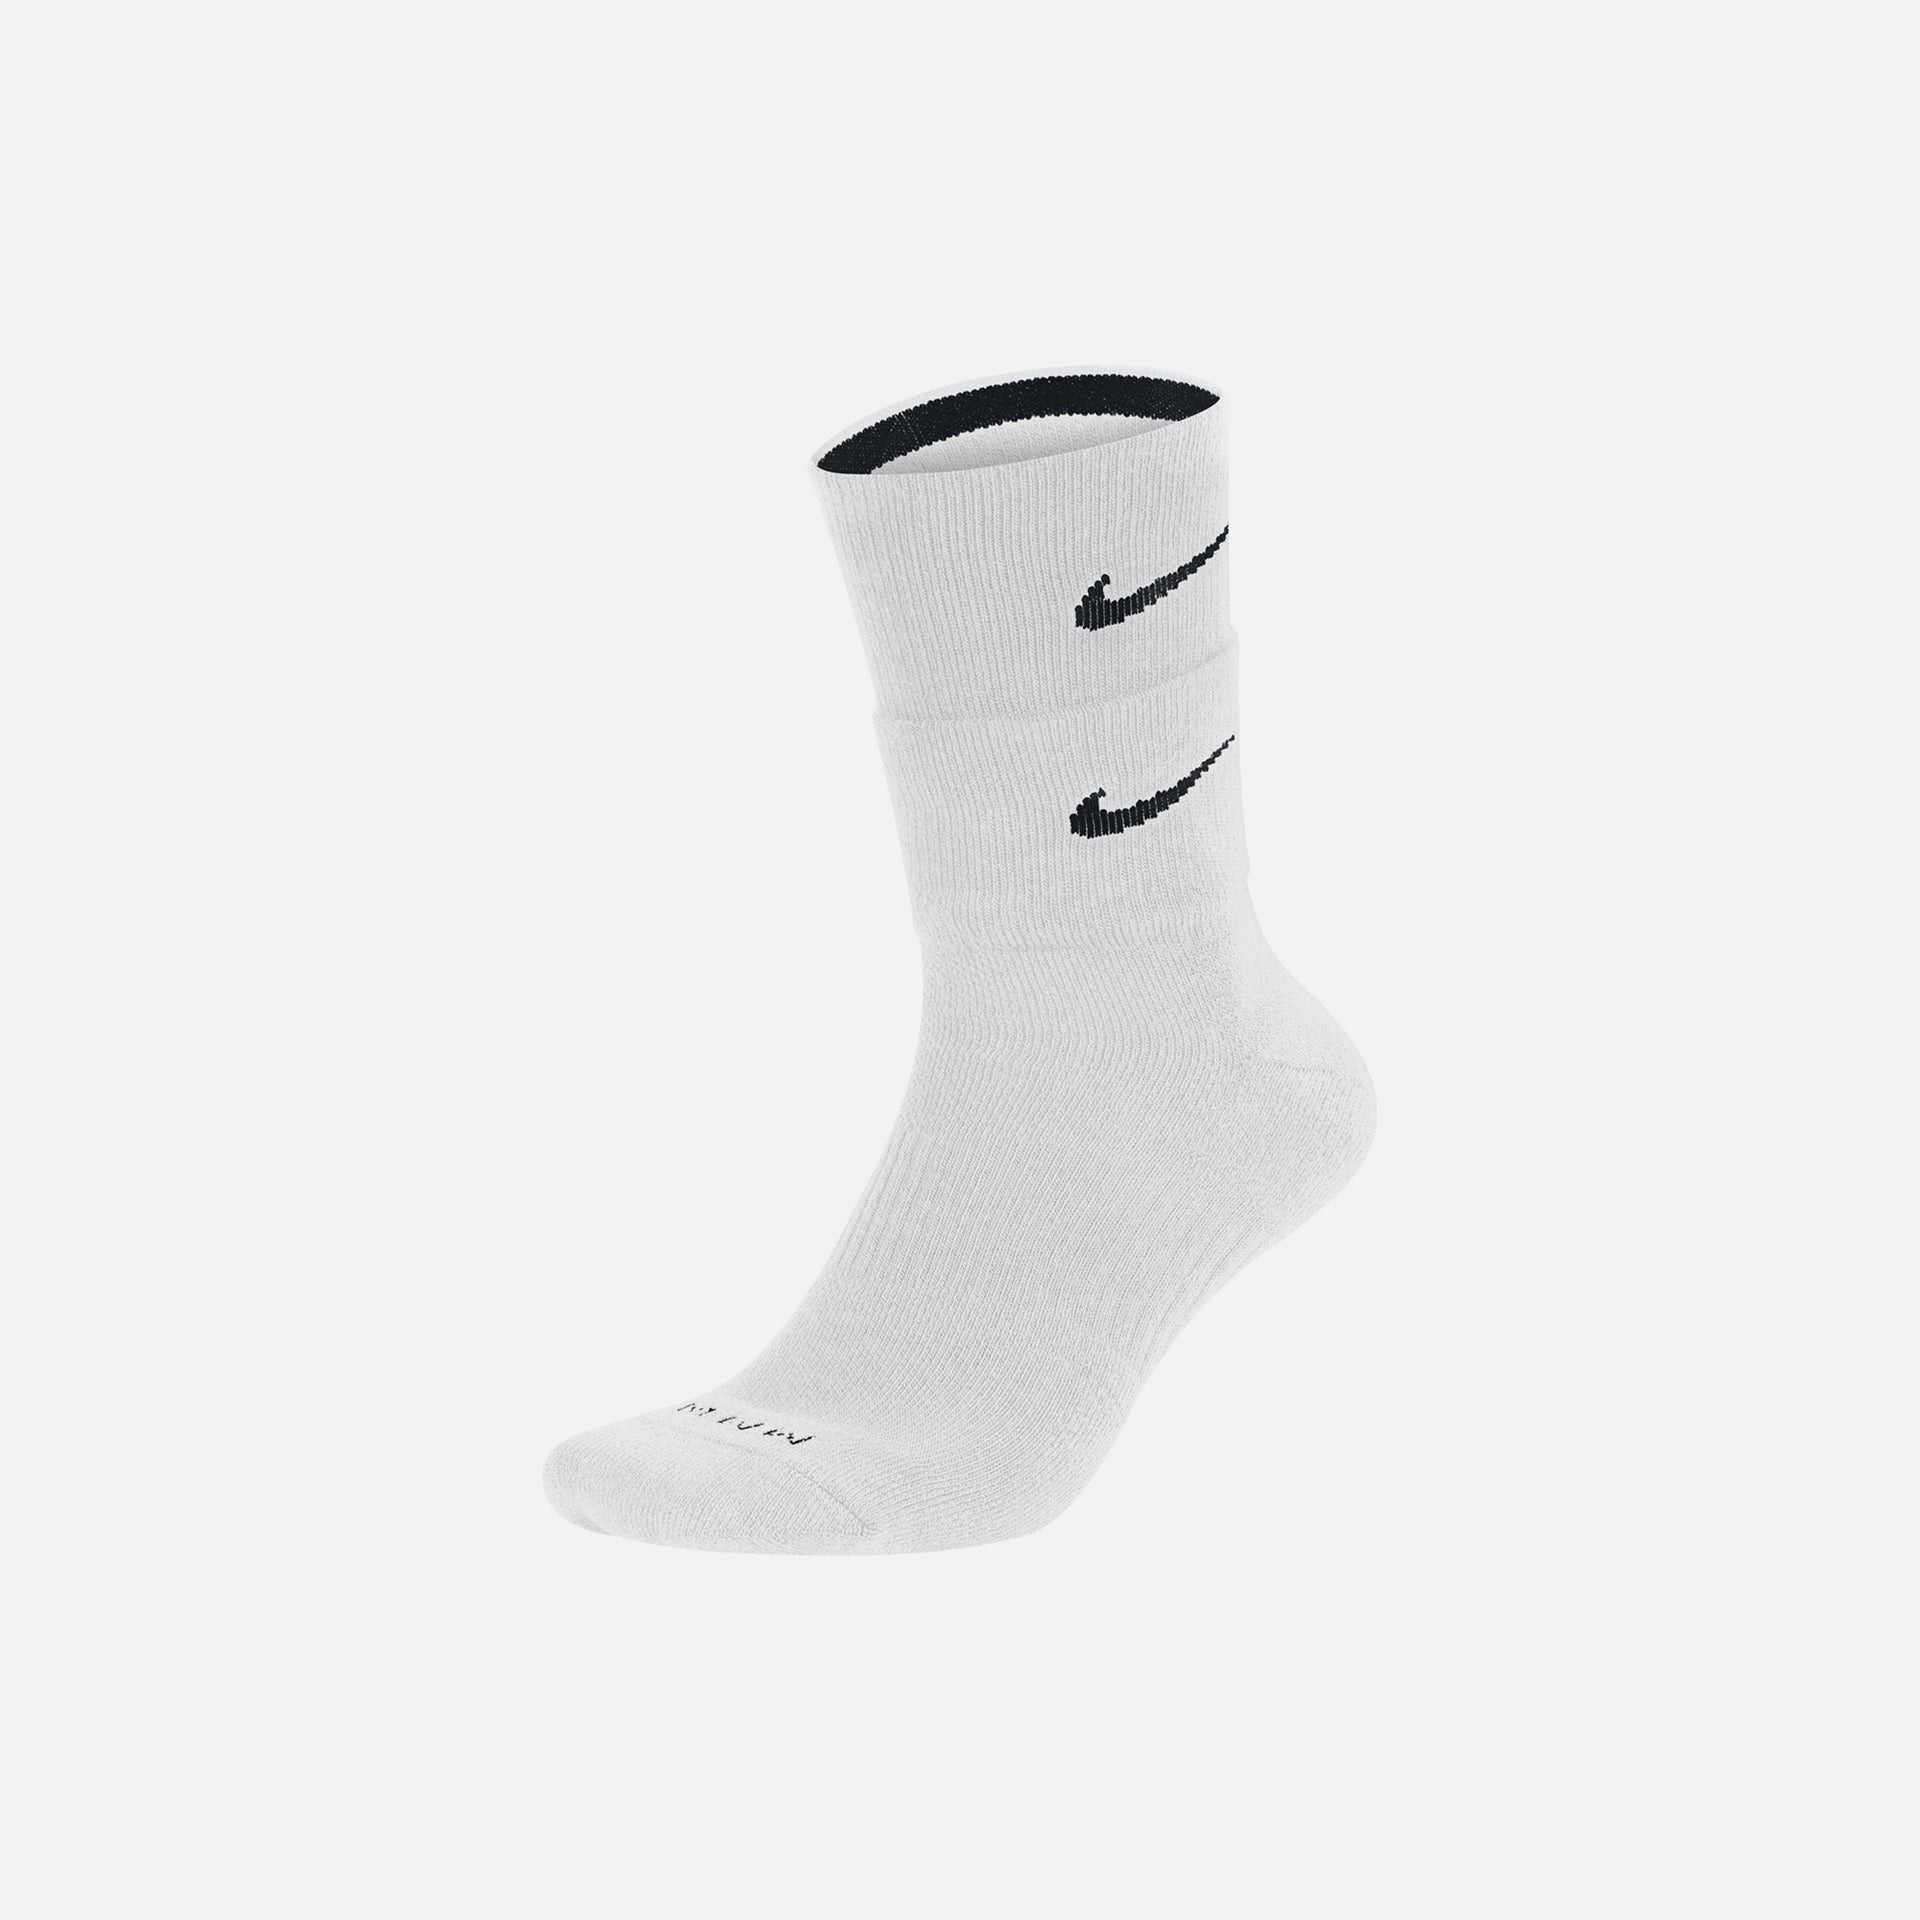 Nike x MMW Sock - White / Black